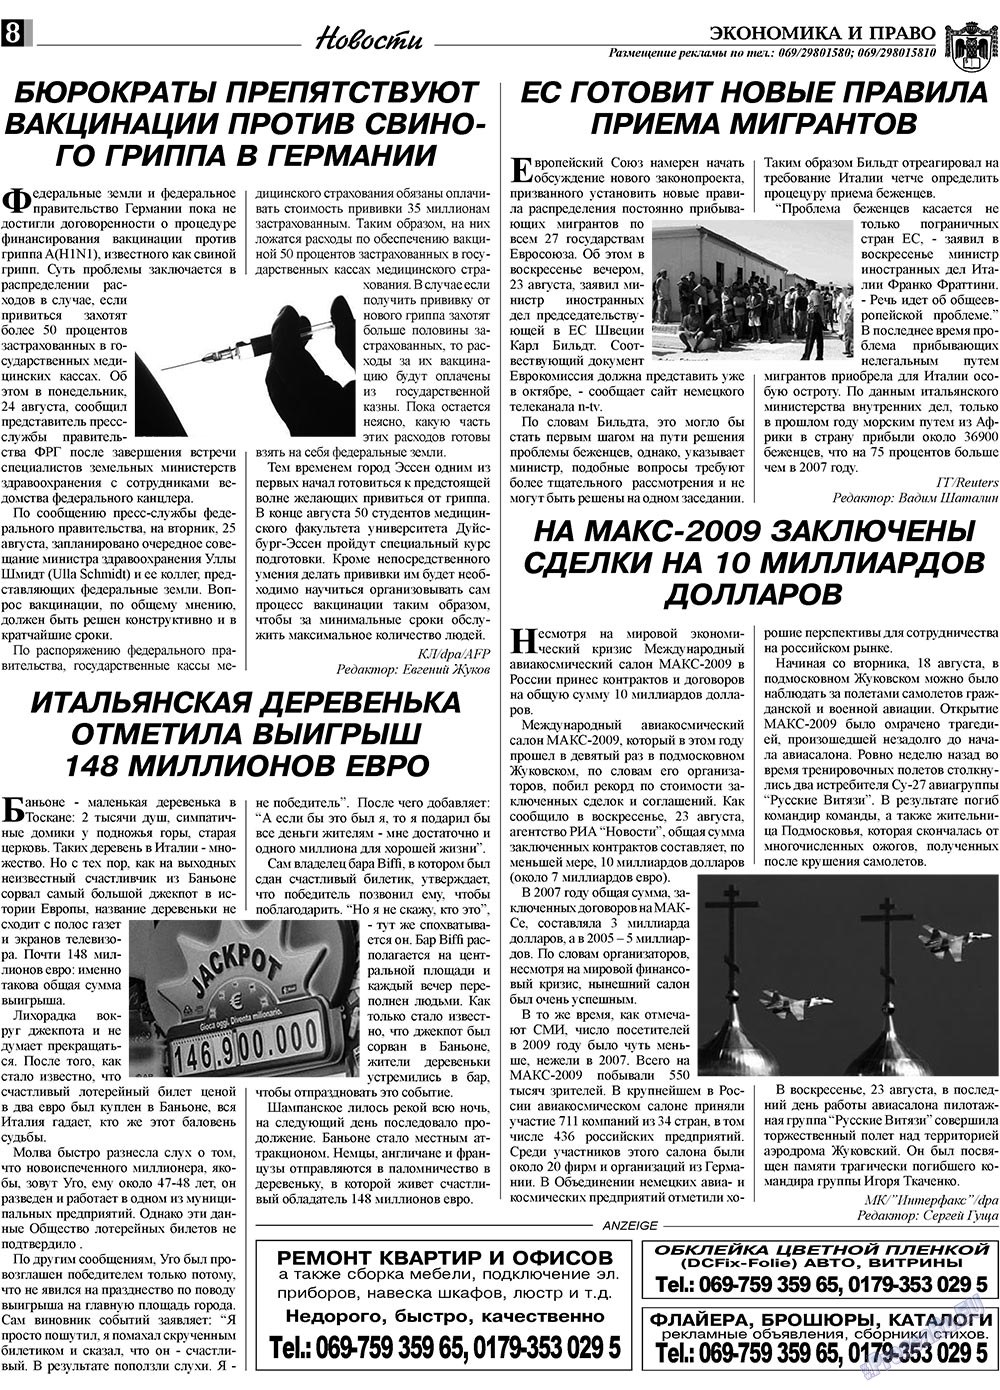 Экономика и право, газета. 2009 №9 стр.8